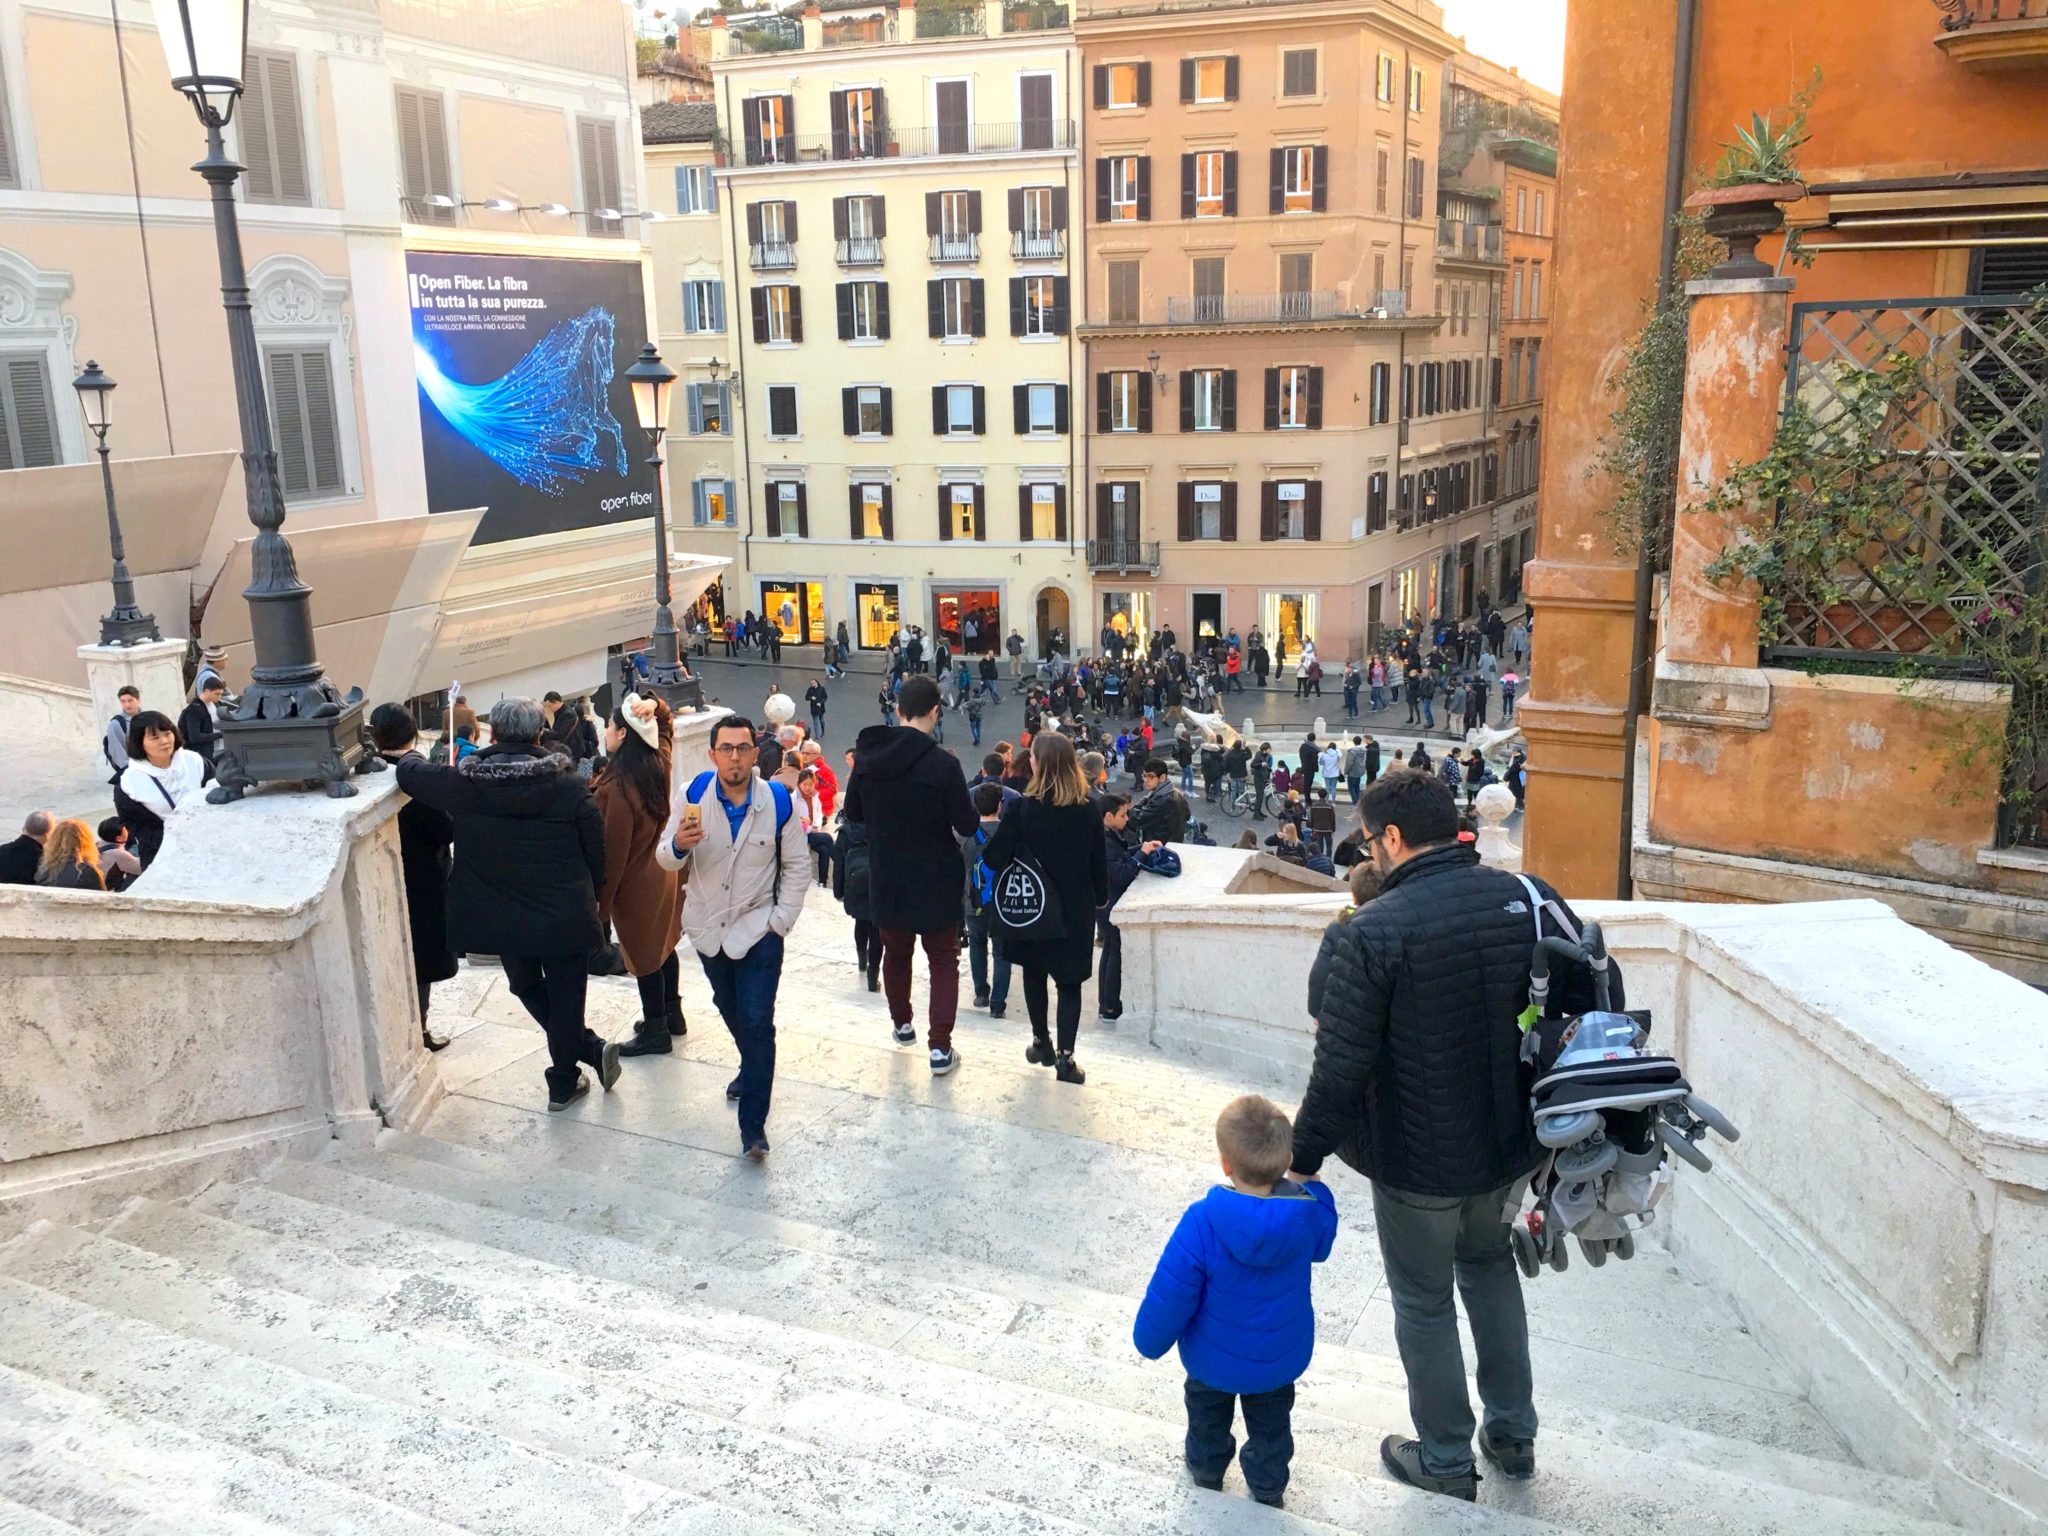 Roma'da çocukla gezilecek yerler